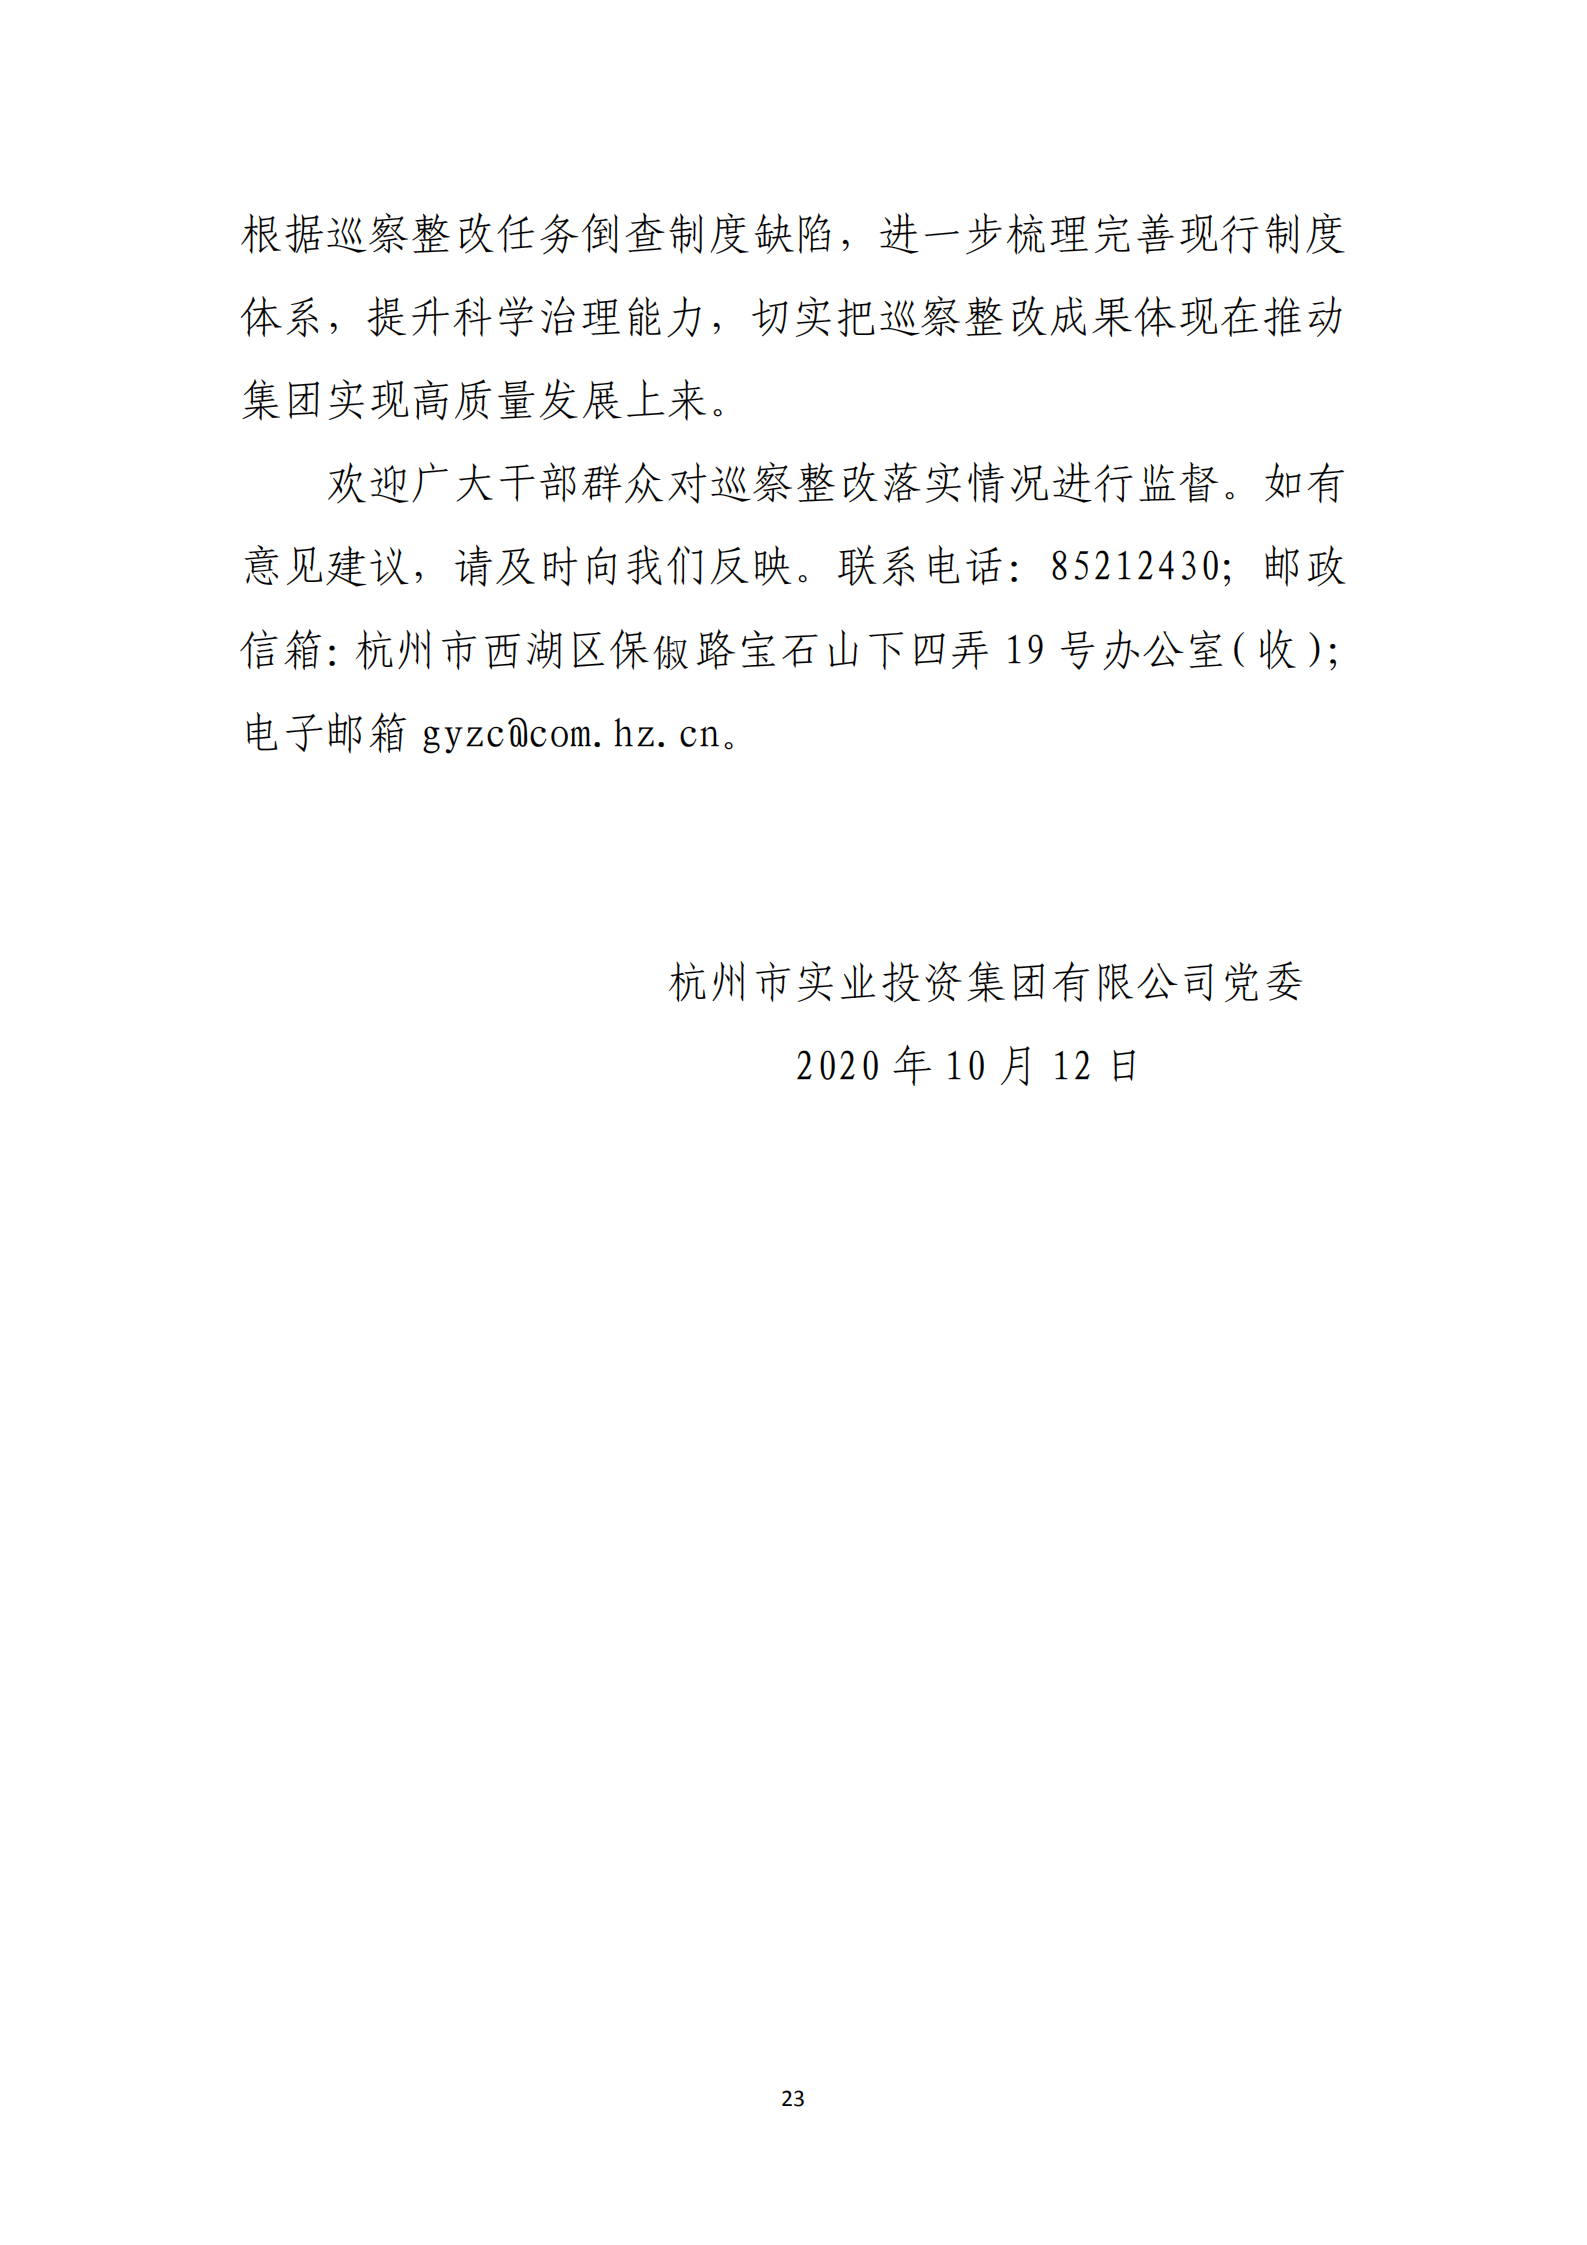 杭实集团党委关于巡察整改情况的通报_22.png